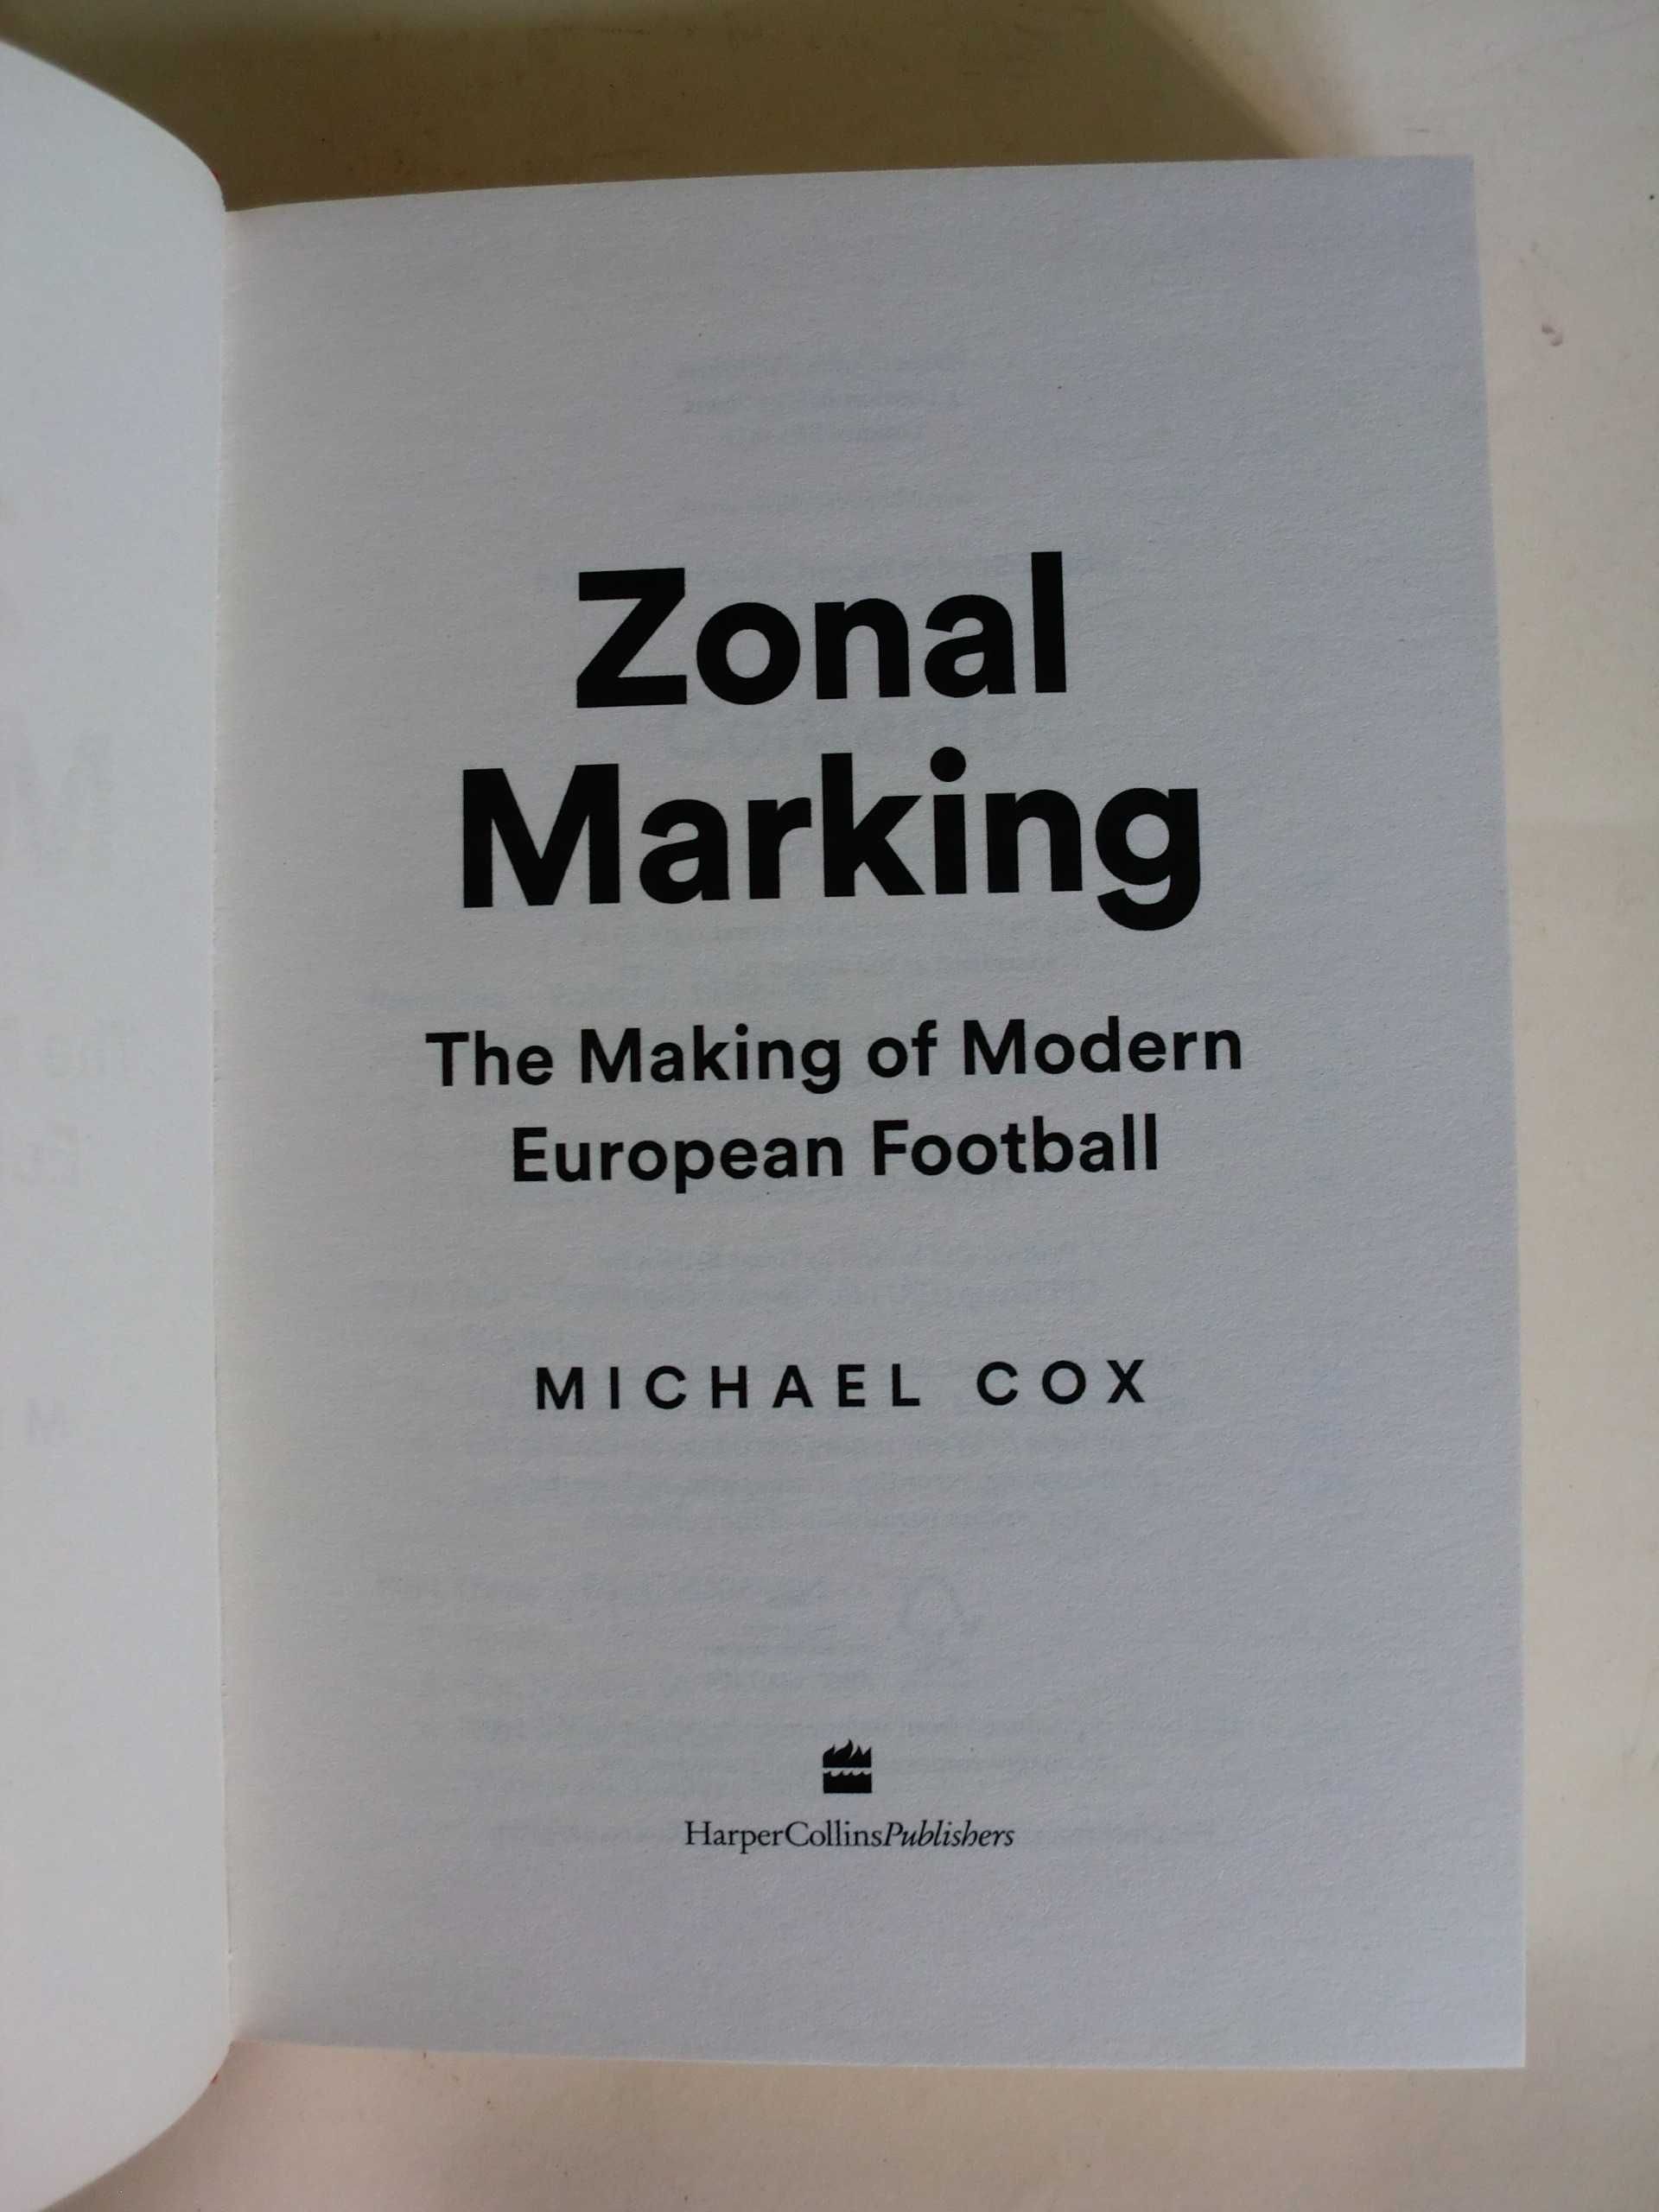 Zonal Marking
de Michael Cox